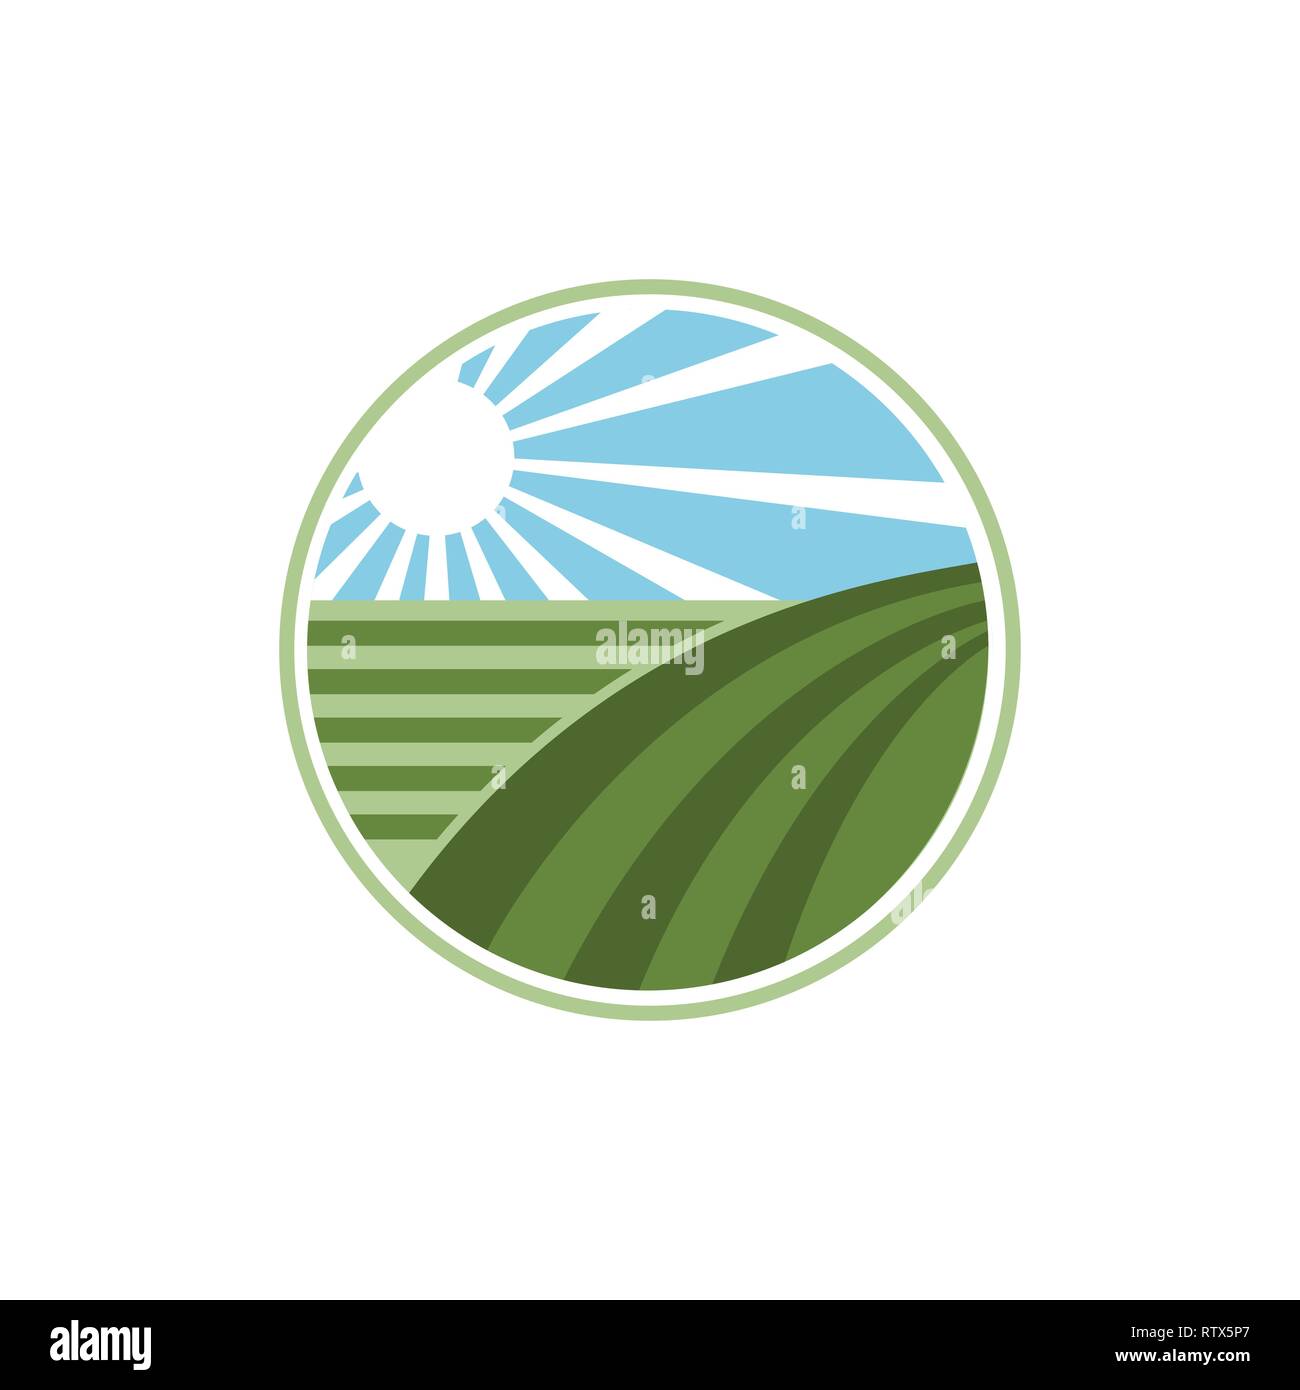 Frische Produkte einzigartiges Zeichen oder Symbol. Der ökologische Landbau Logo Design Idee. Landwirtschaft Logo Design. Logo Template für frischen landwirtschaftlichen Nahrungsmittel Stock Vektor